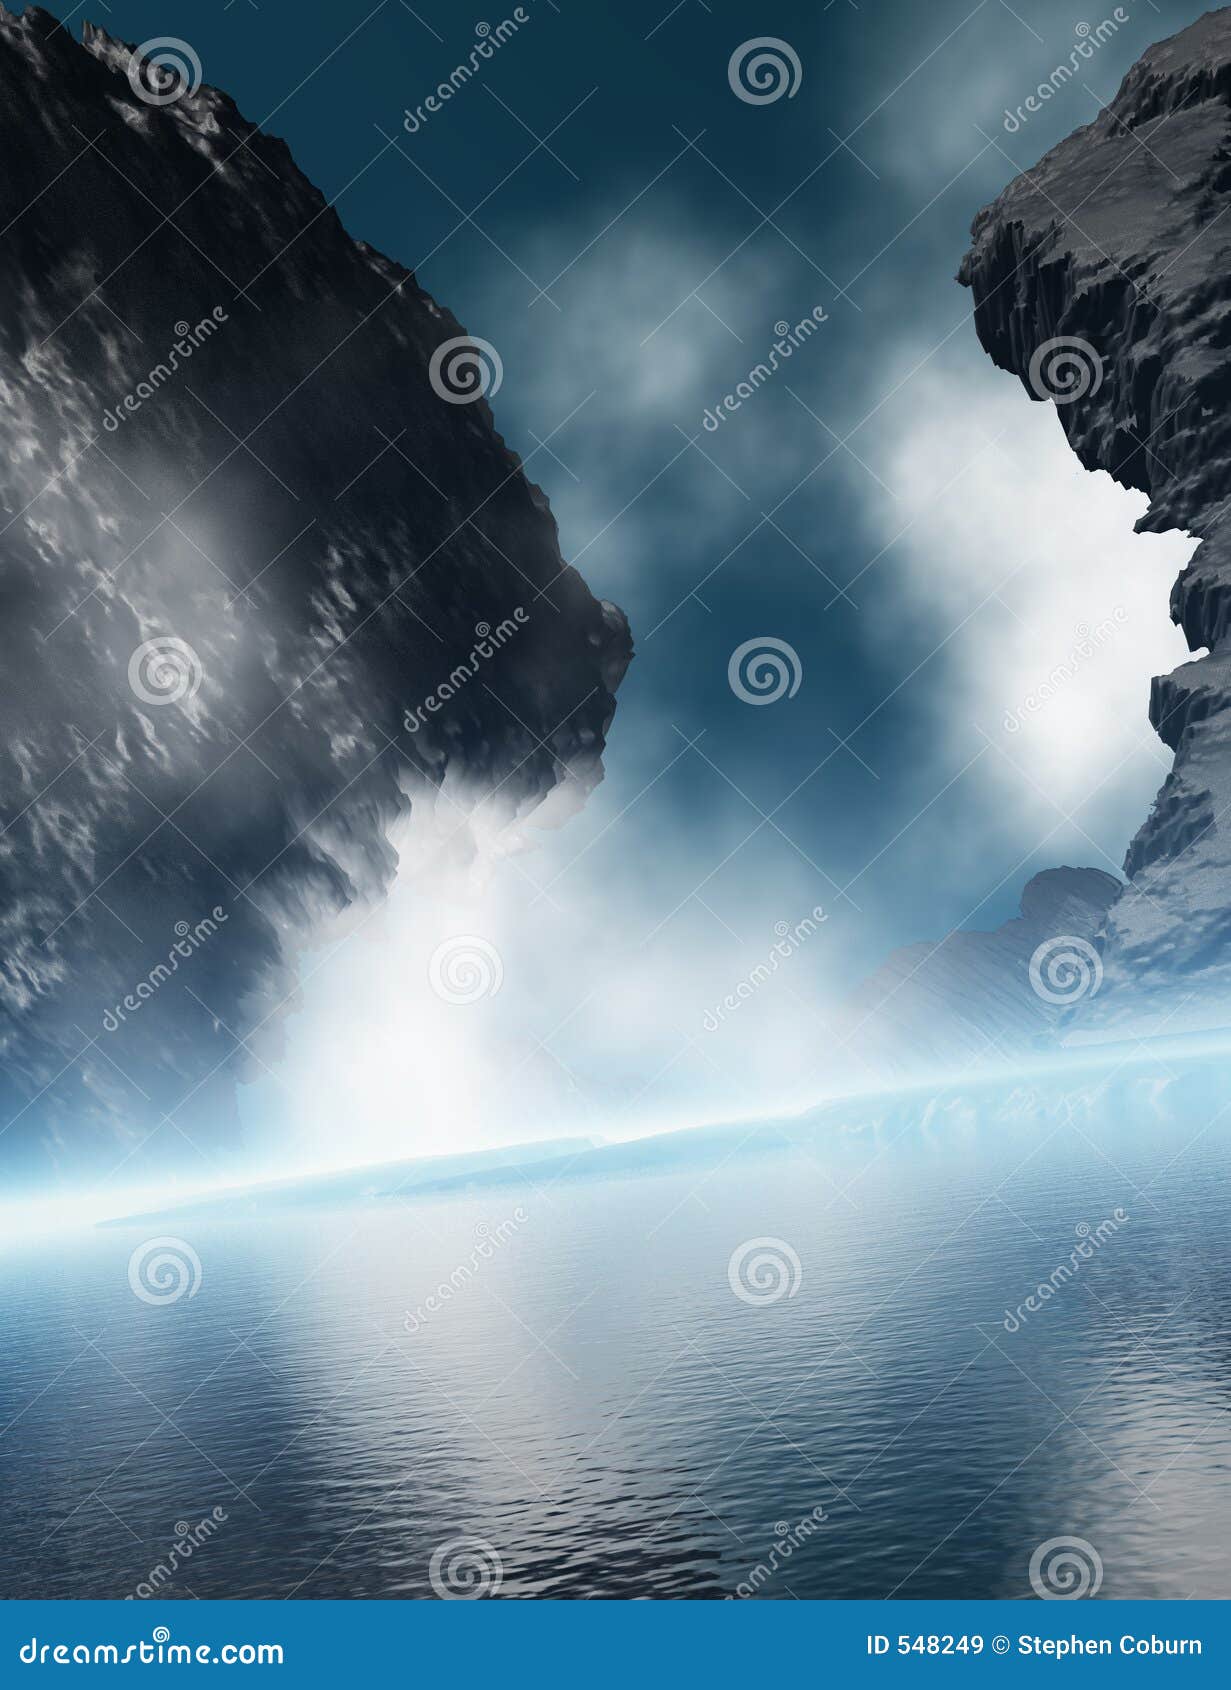 https://thumbs.dreamstime.com/z/granite-rock-ocean-mist-548249.jpg